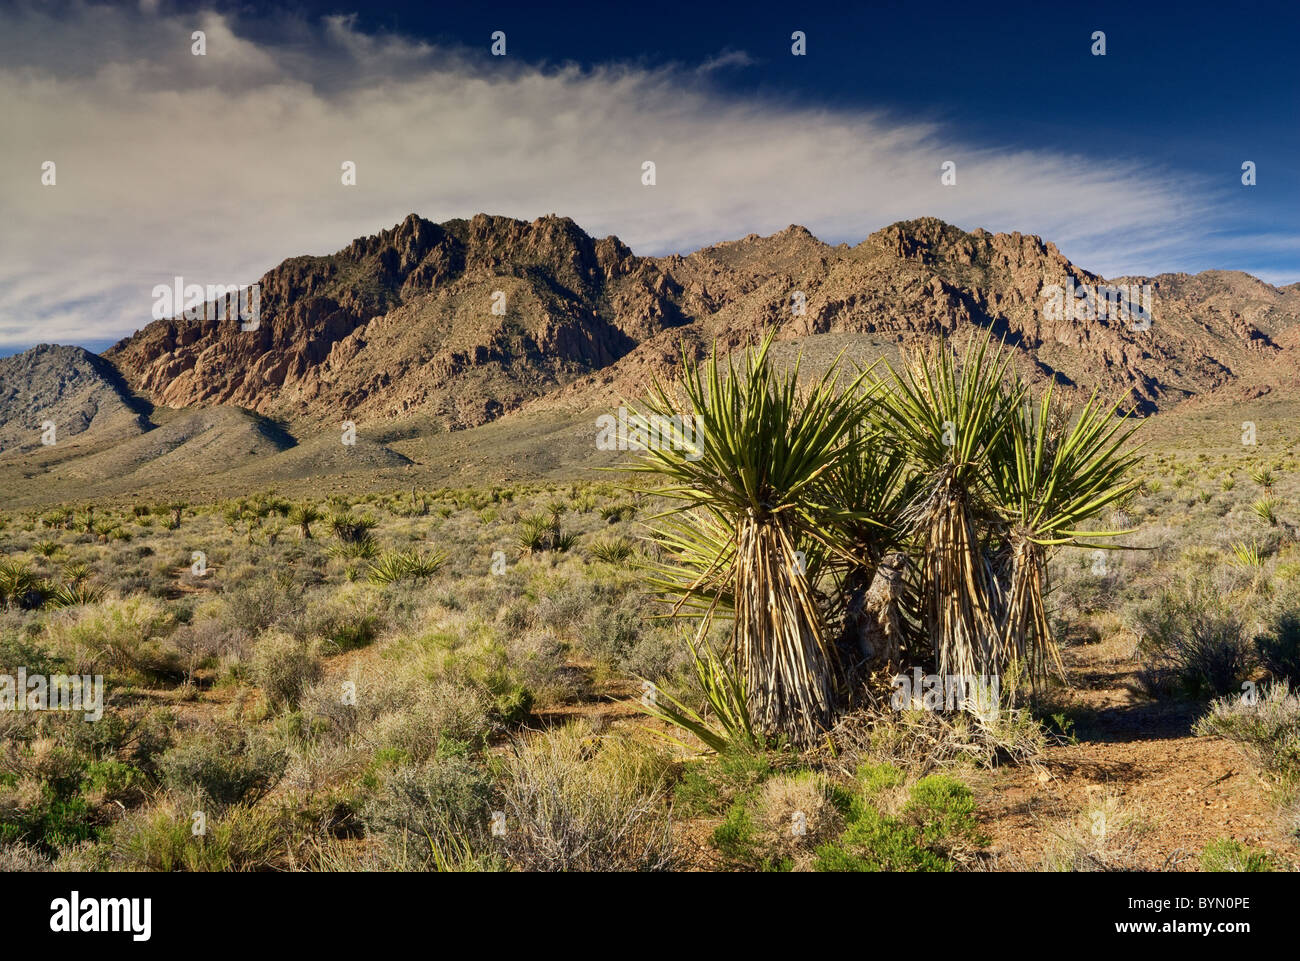 Également connu sous le nom de yucca Mojave espagnol poignard avec gamme Kingston montagnes en désert de Mojave, Californie, USA Banque D'Images